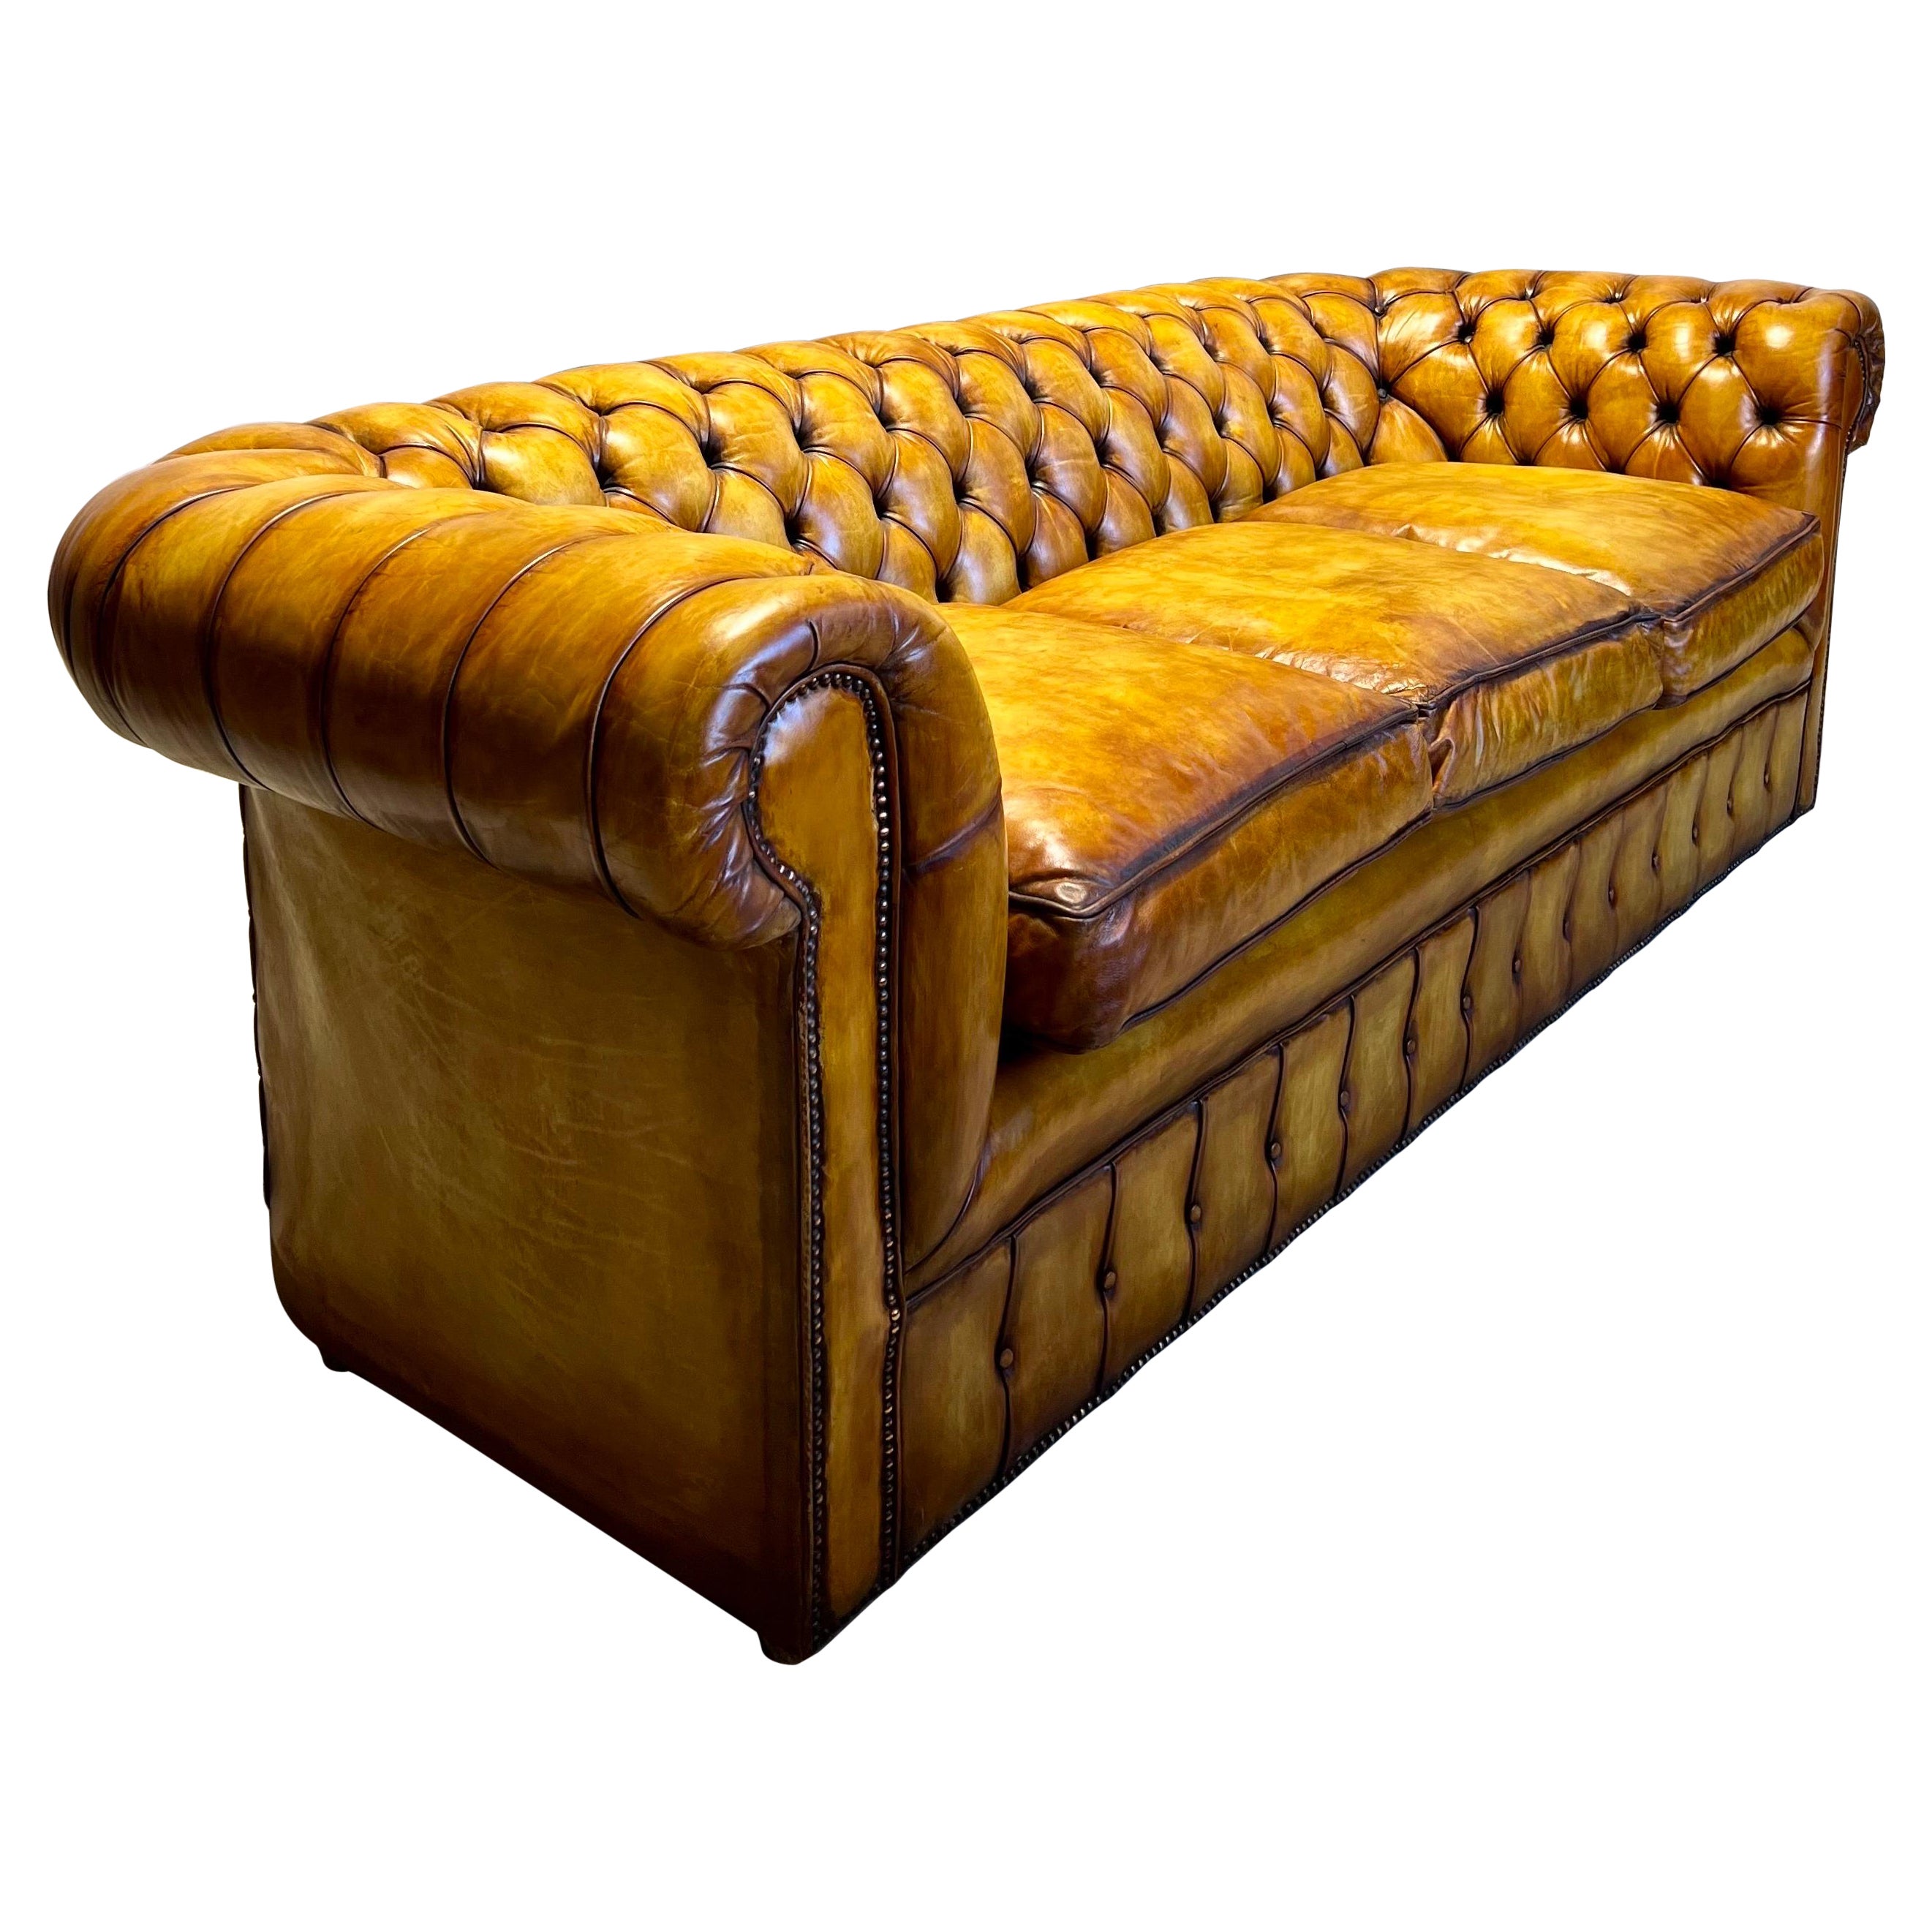 Magnifique canapé Chesterfield en cuir du milieu du siècle dernier teint à la main, brun doré